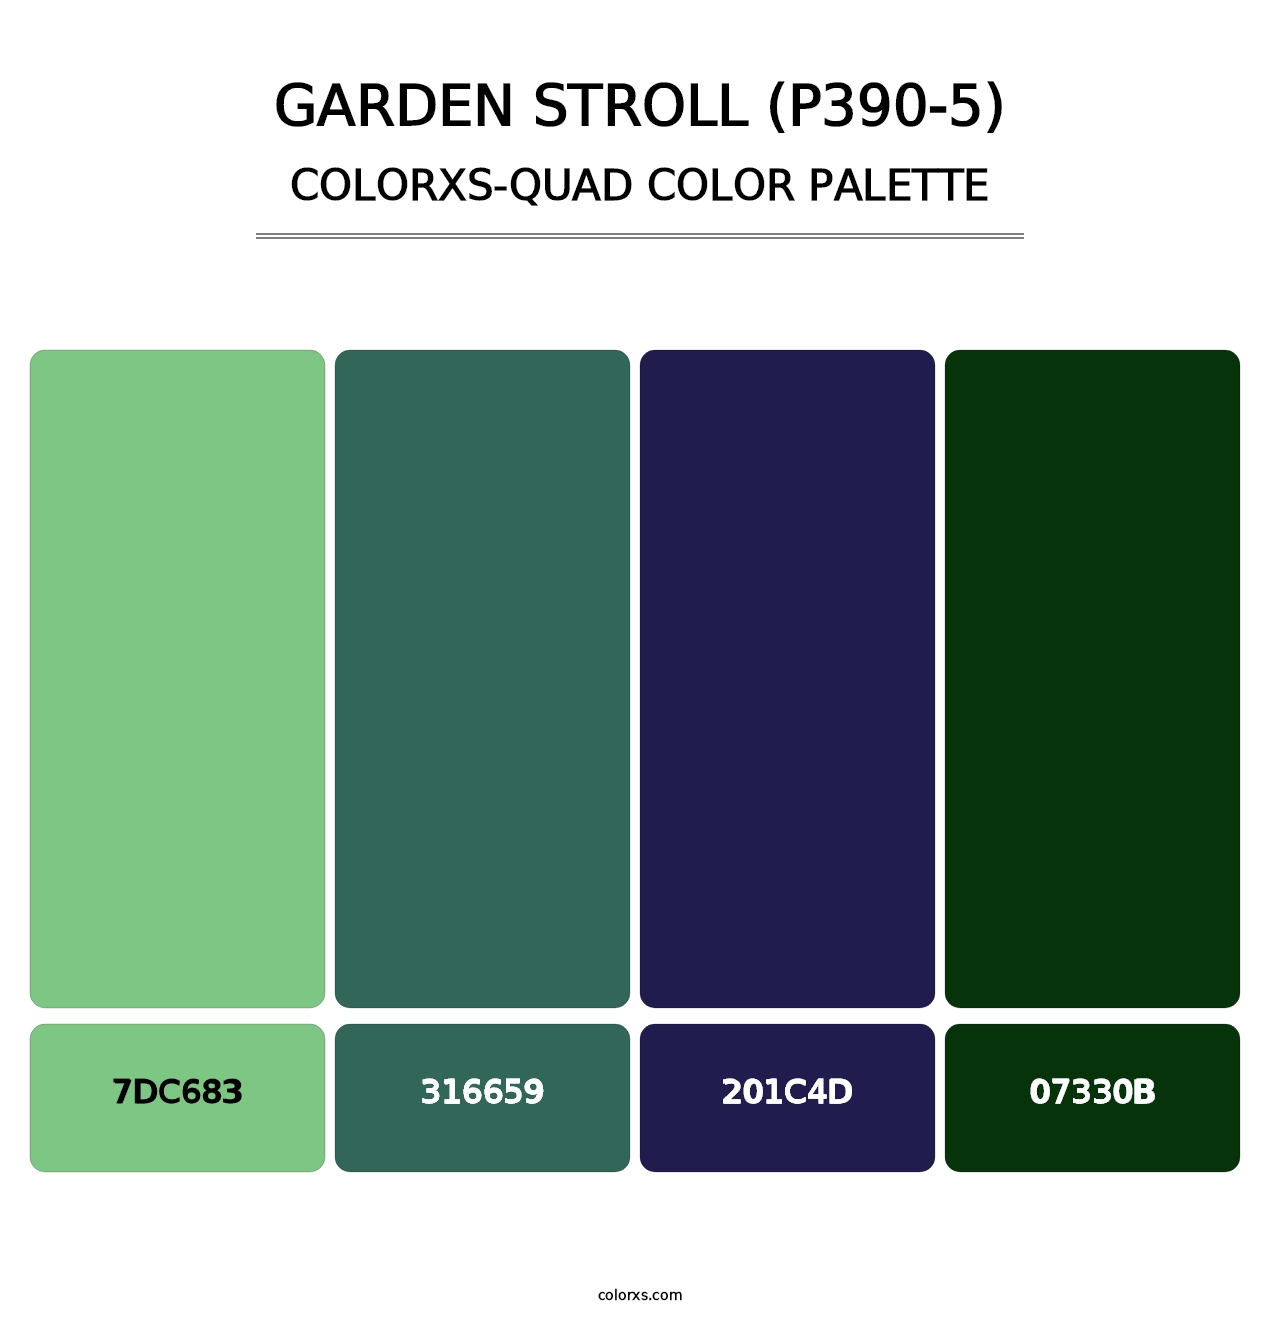 Garden Stroll (P390-5) - Colorxs Quad Palette